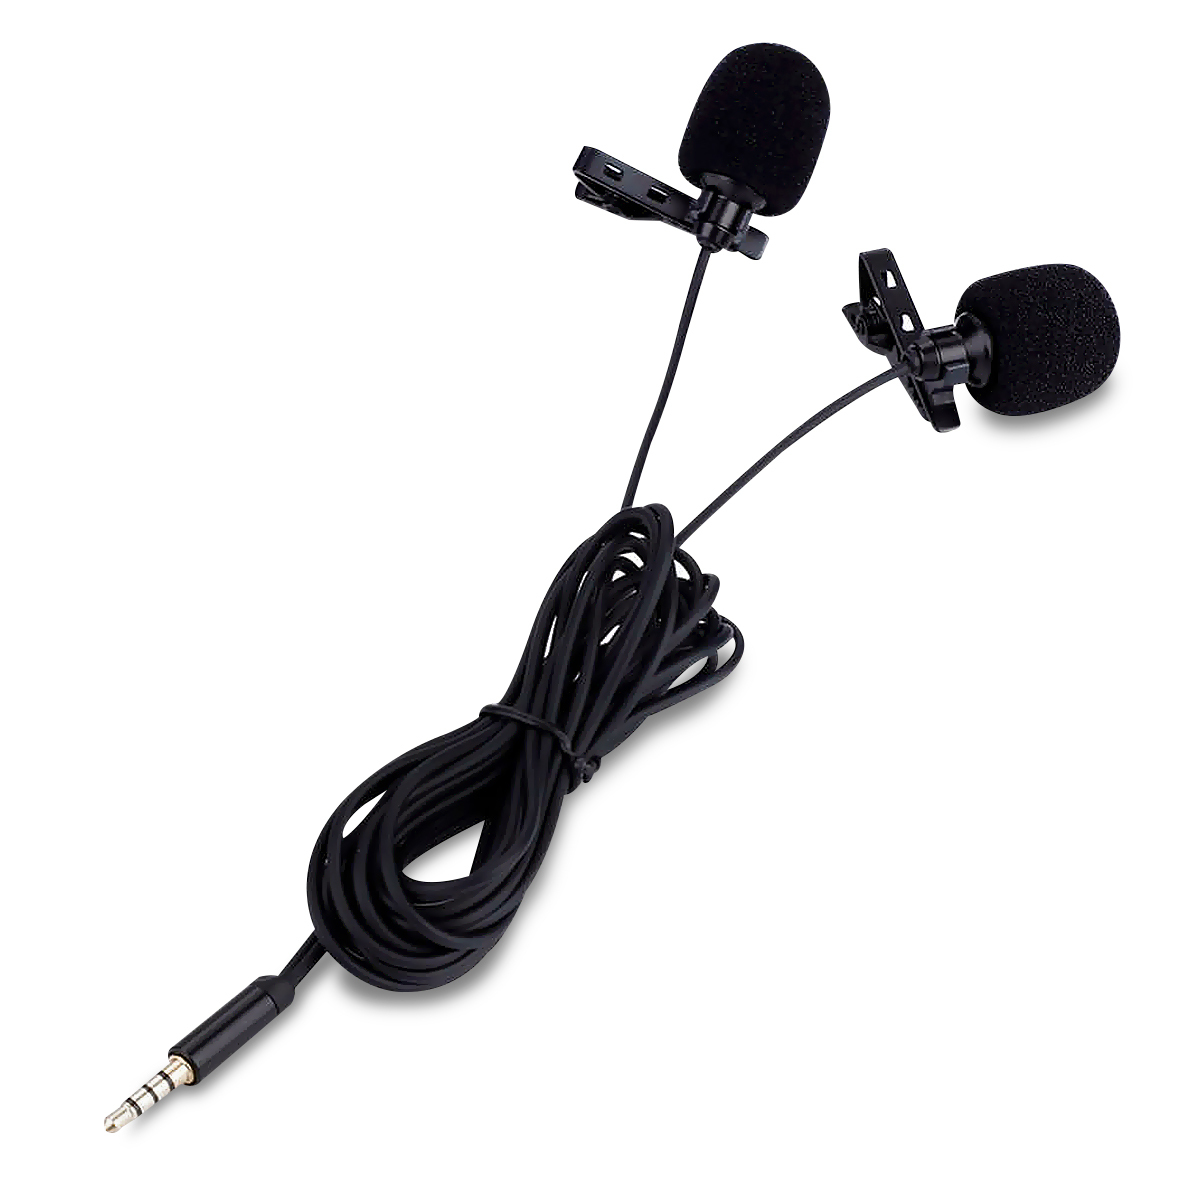 Micrófono Inalámbrico para Celular con Adaptador Lightning DBugg / Negro, Micrófonos y accesorios, Instrumentos musicales y DJ, Audio y video, Todas, Categoría